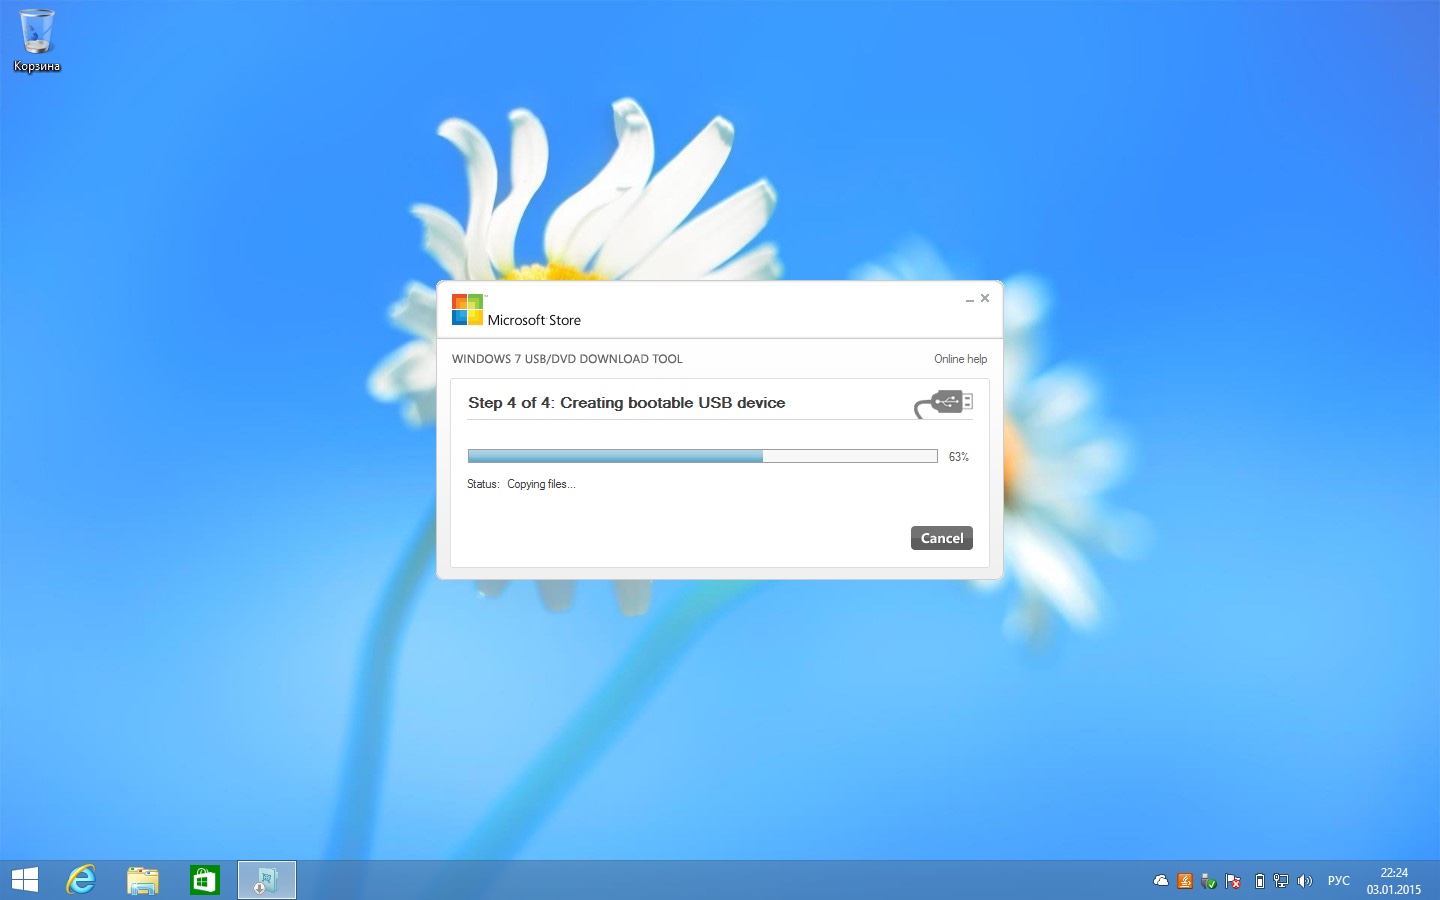 Після форматування почнеться процес створення завантажувальної флешки з Windows 8, який займе деякий час, в залежності від швидкості вашого накопичувача